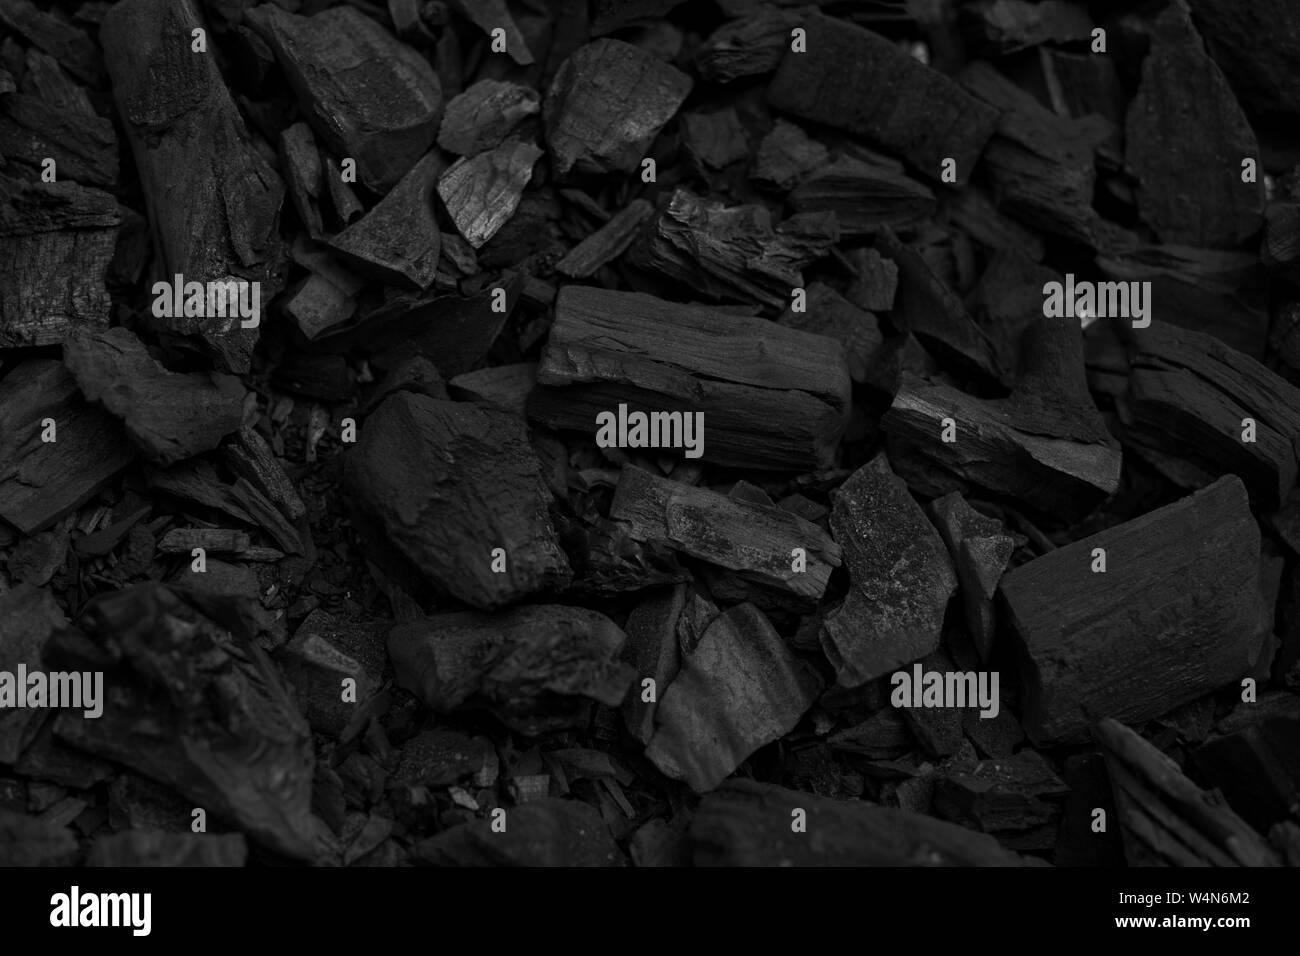 Morceaux de charbon noir texture background pour barbecue Banque D'Images